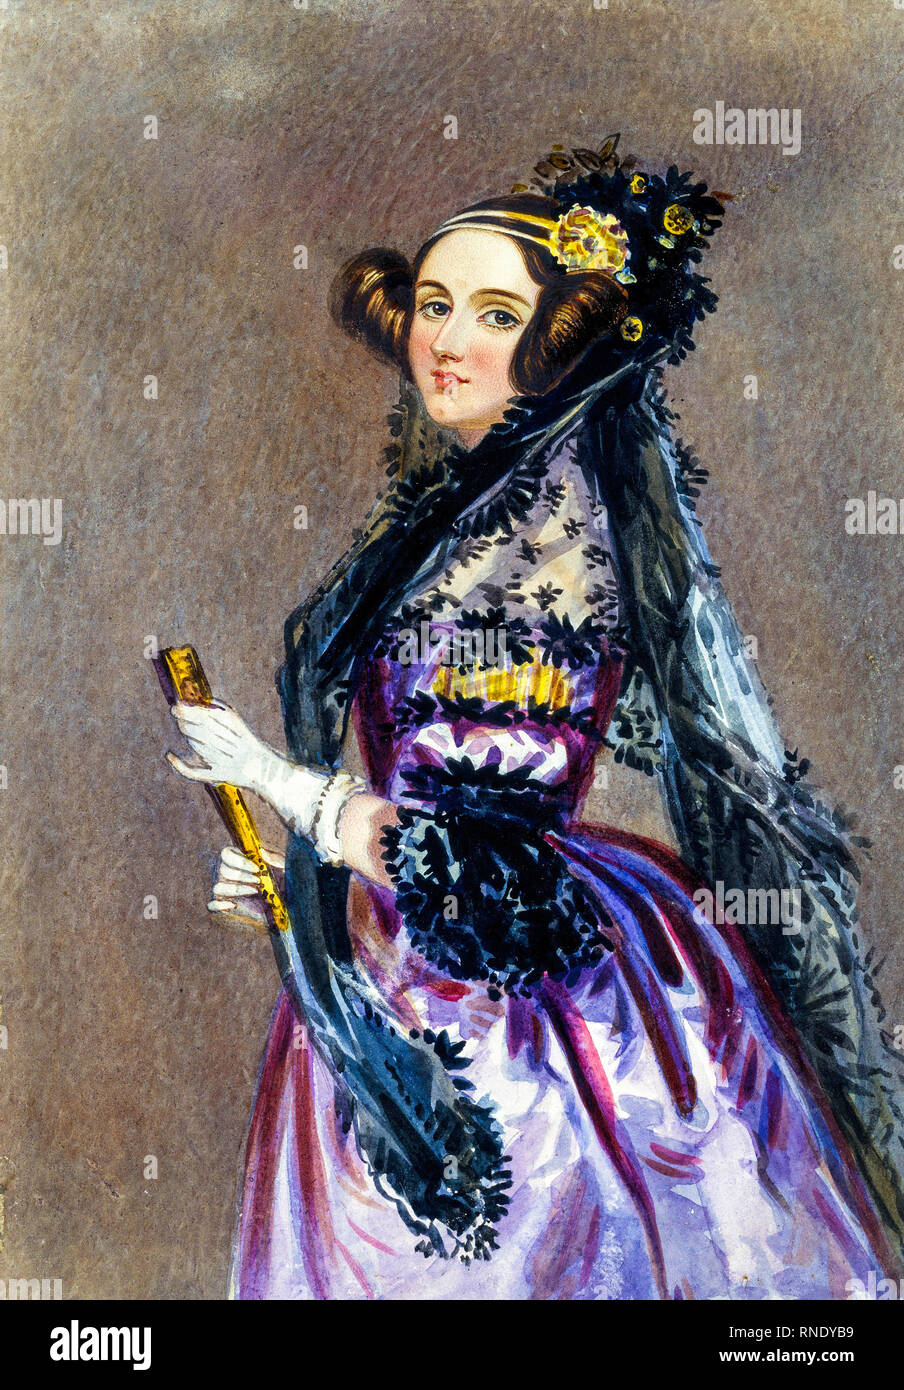 ADA Lovelace (1815-1852), portrait peint par Alfred Edward Chalon, vers 1840 Banque D'Images